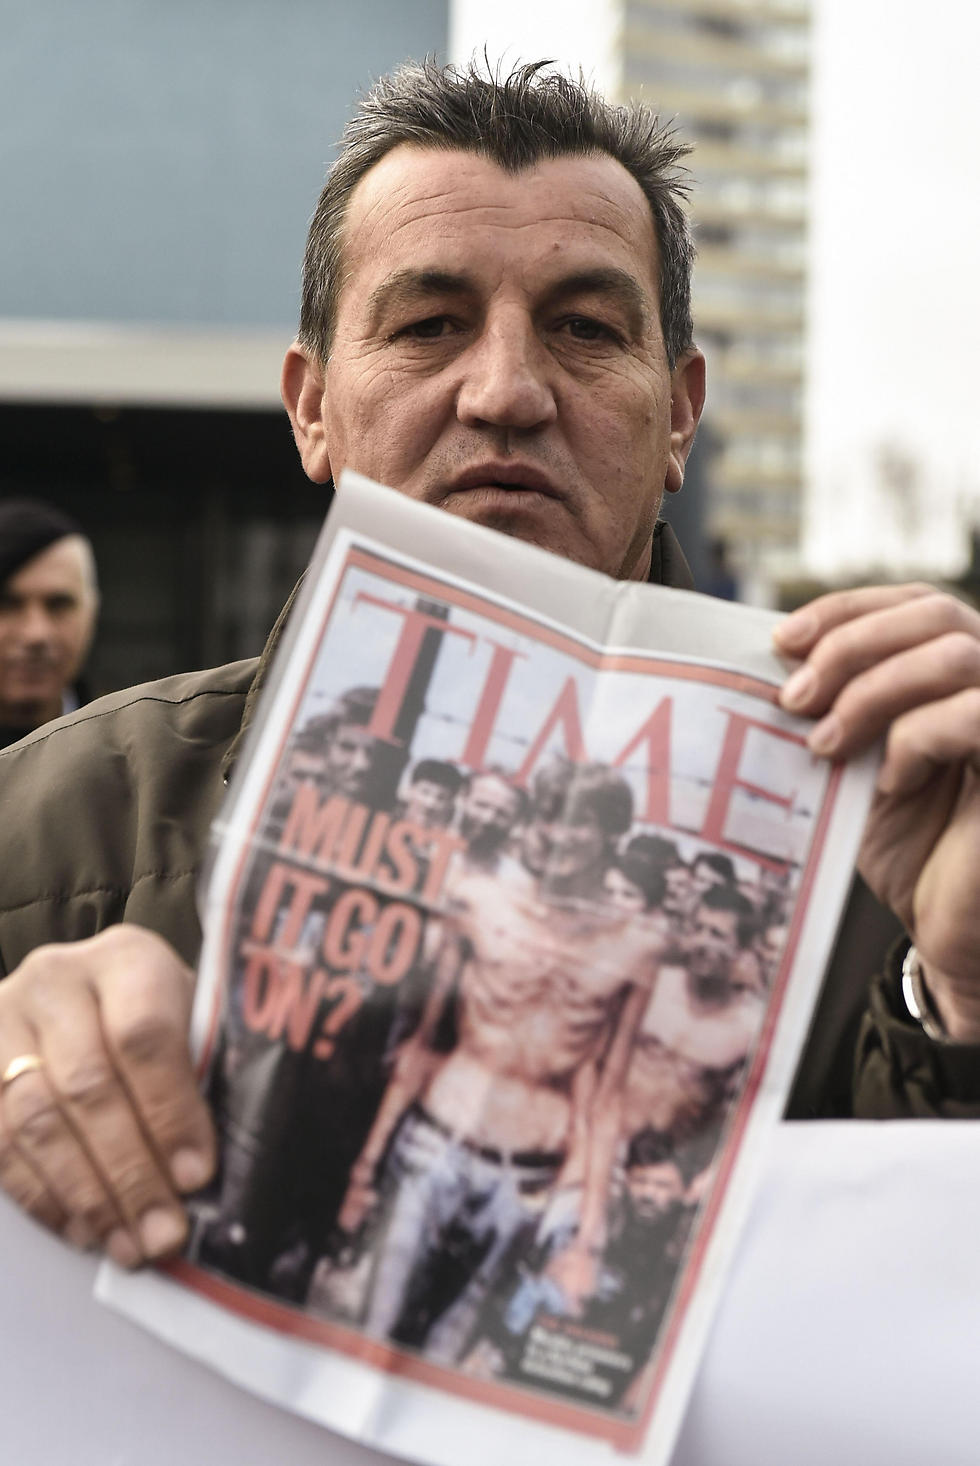 פיקרט אליץ', ששרד את הטבח, מחזיק גיליון של מגזין "טיים" עם תמונתו על השער (צילום: AFP) (צילום: AFP)